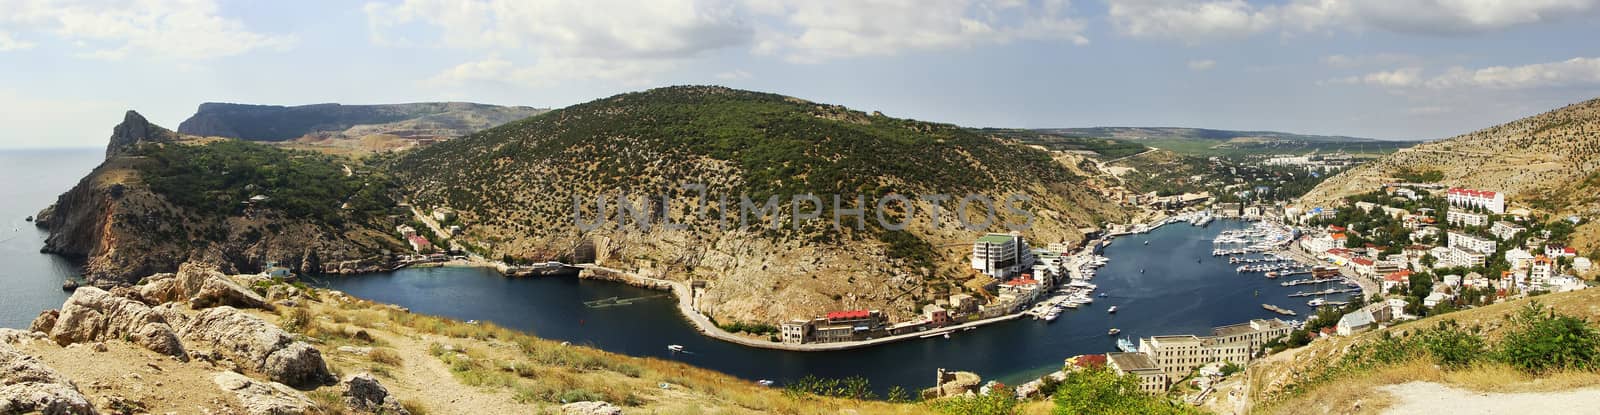 Panoramic view of Balaklava Bay, Crimea by donya_nedomam